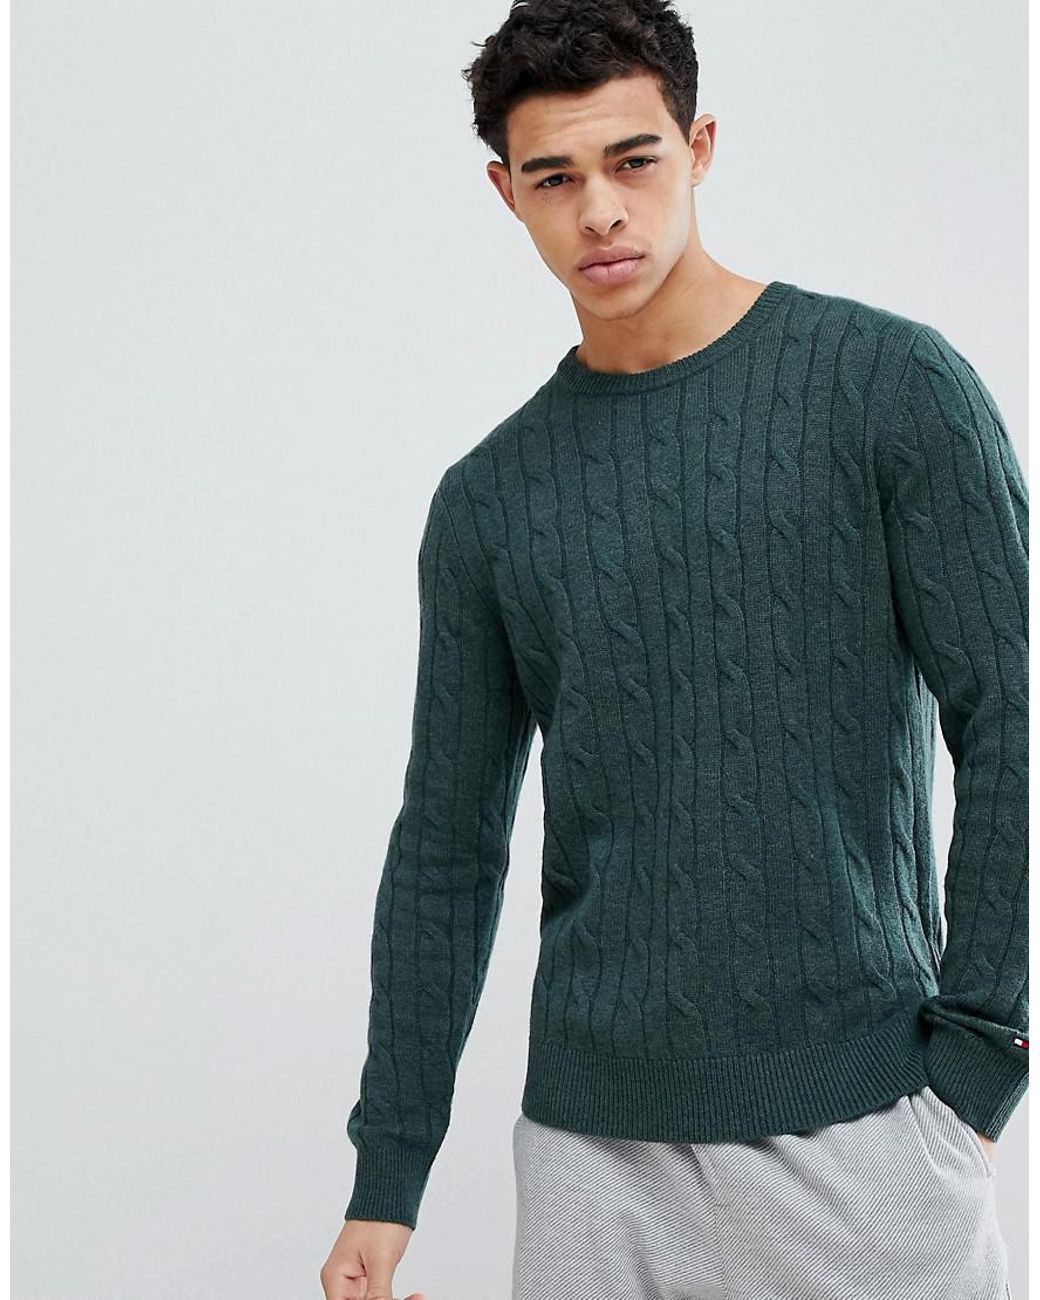 Зеленые свитеры мужские. Джемпер Томми Хилфигер мужской зеленый. Водолазка Томми Хилфигер мужская зеленая. Tommy Hilfiger зеленый пуловер. Томми Хилфигер зеленый свитер.